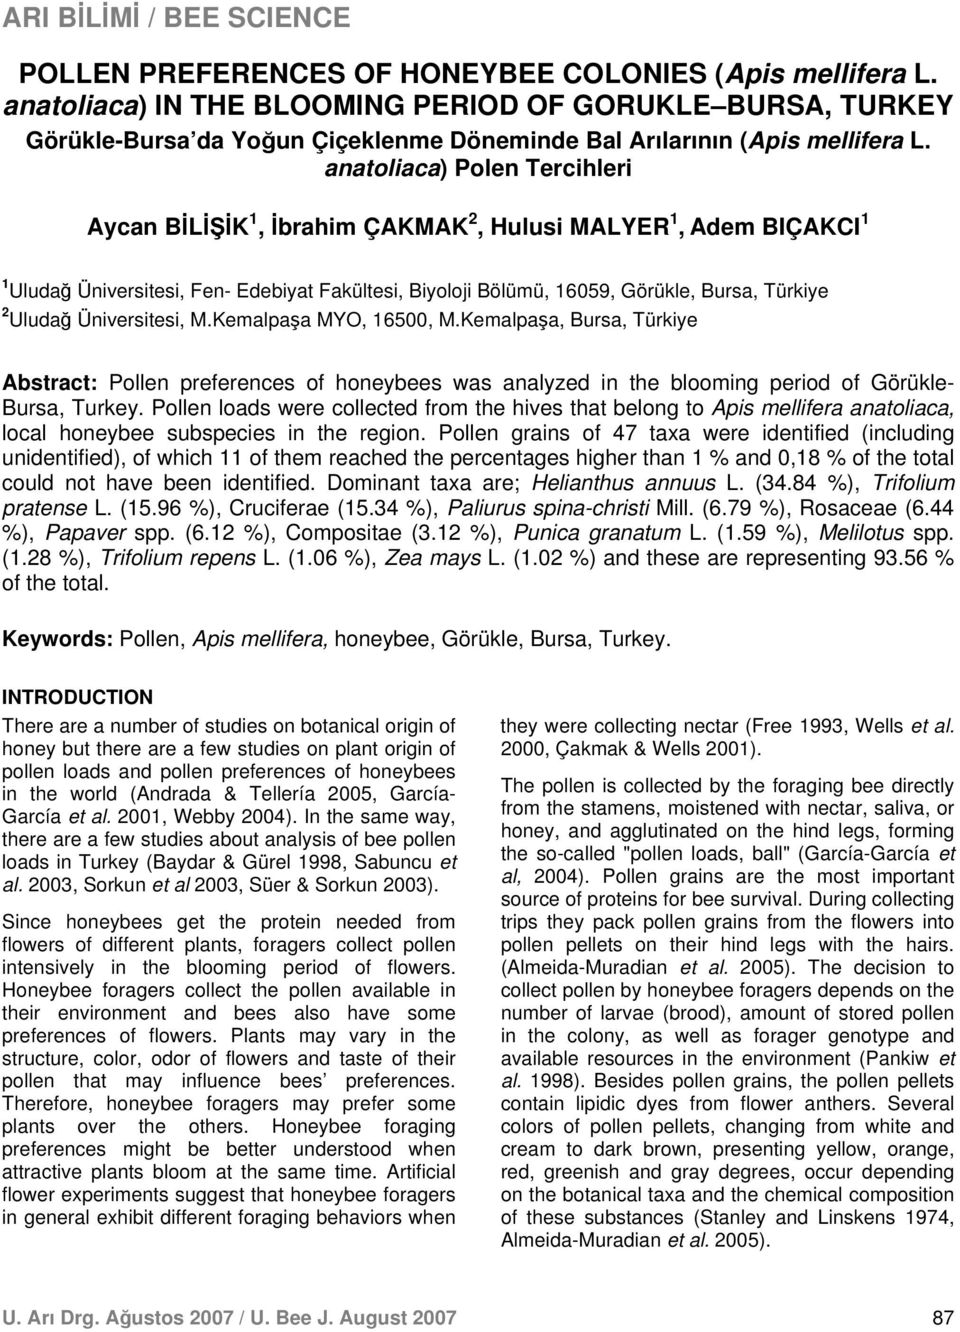 Uludağ Üniversitesi, M.Kemalpaşa MYO, 16500, M.Kemalpaşa, Bursa, Türkiye Abstract: Pollen preferences of honeybees was analyzed in the blooming period of Görükle- Bursa, Turkey.